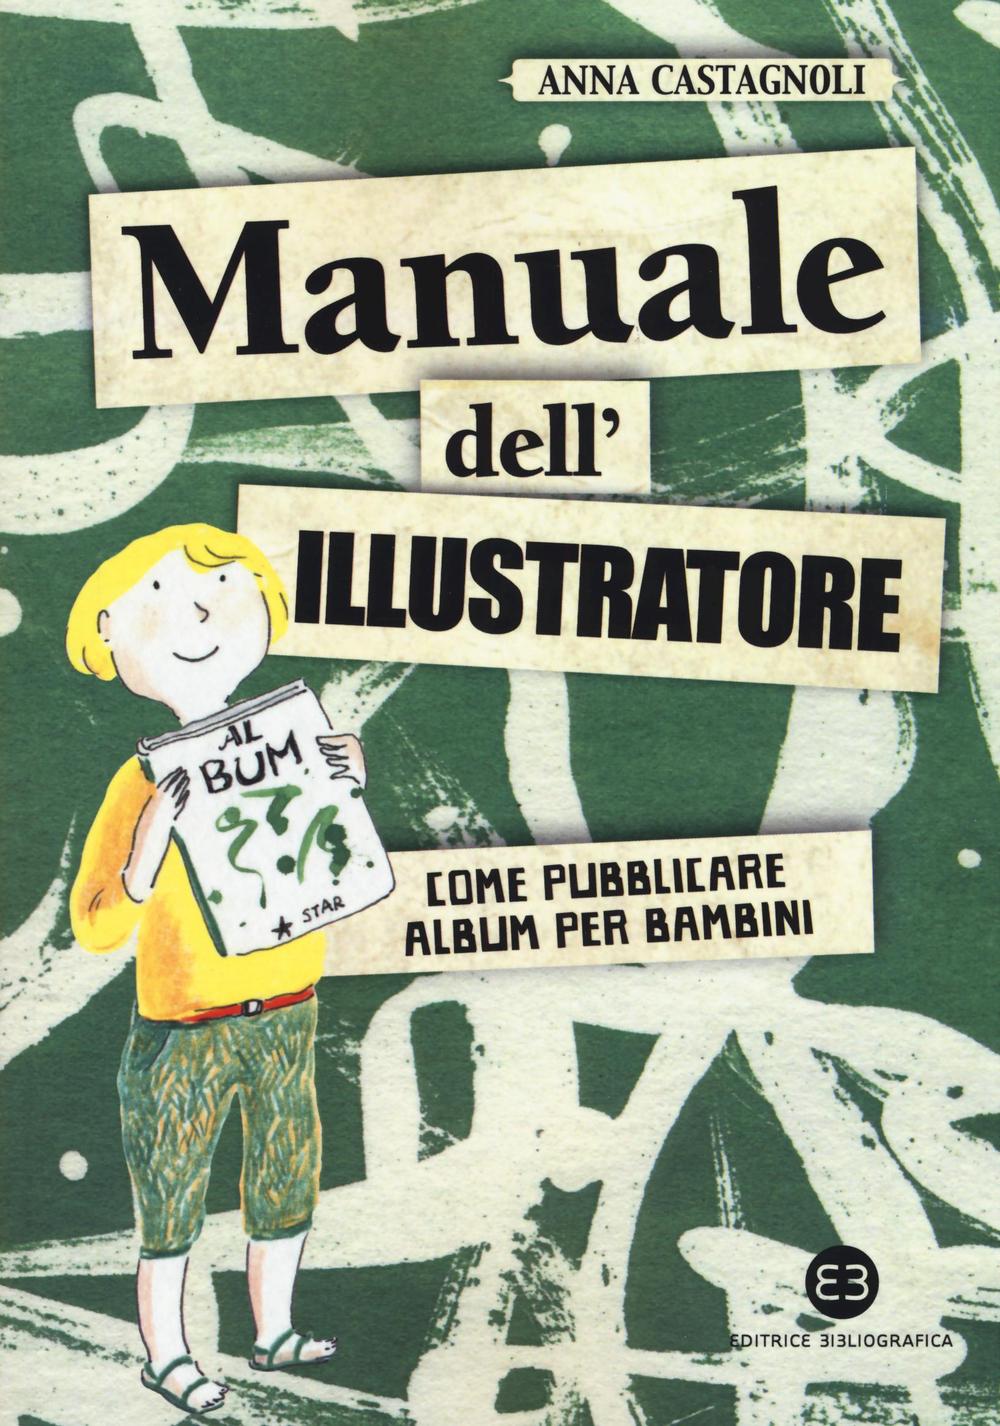 Libri Anna Castagnoli - Manuale Dell'illustratore. Come Pubblicare Album Per Bambini NUOVO SIGILLATO, EDIZIONE DEL 17/12/2016 SUBITO DISPONIBILE